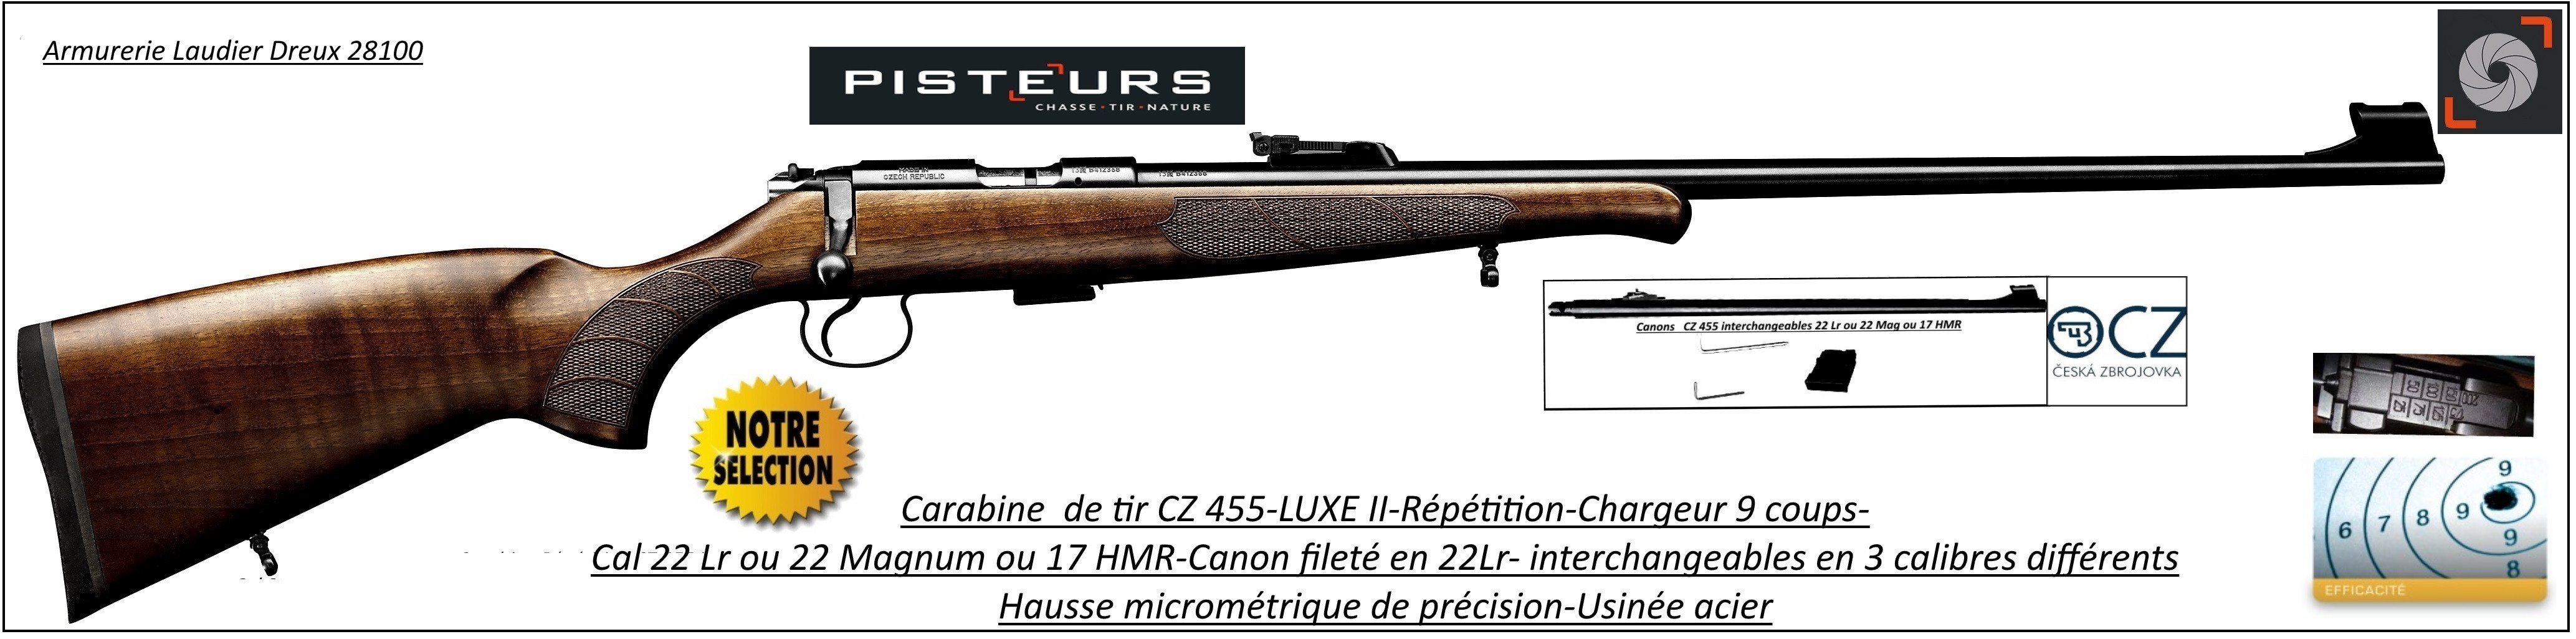 Carabines-CZ-455-Luxe II-Calibre 22 Lr -ou- 22 Magnum- ou-17 HMR-répétition-canons interchangeables-Promotion